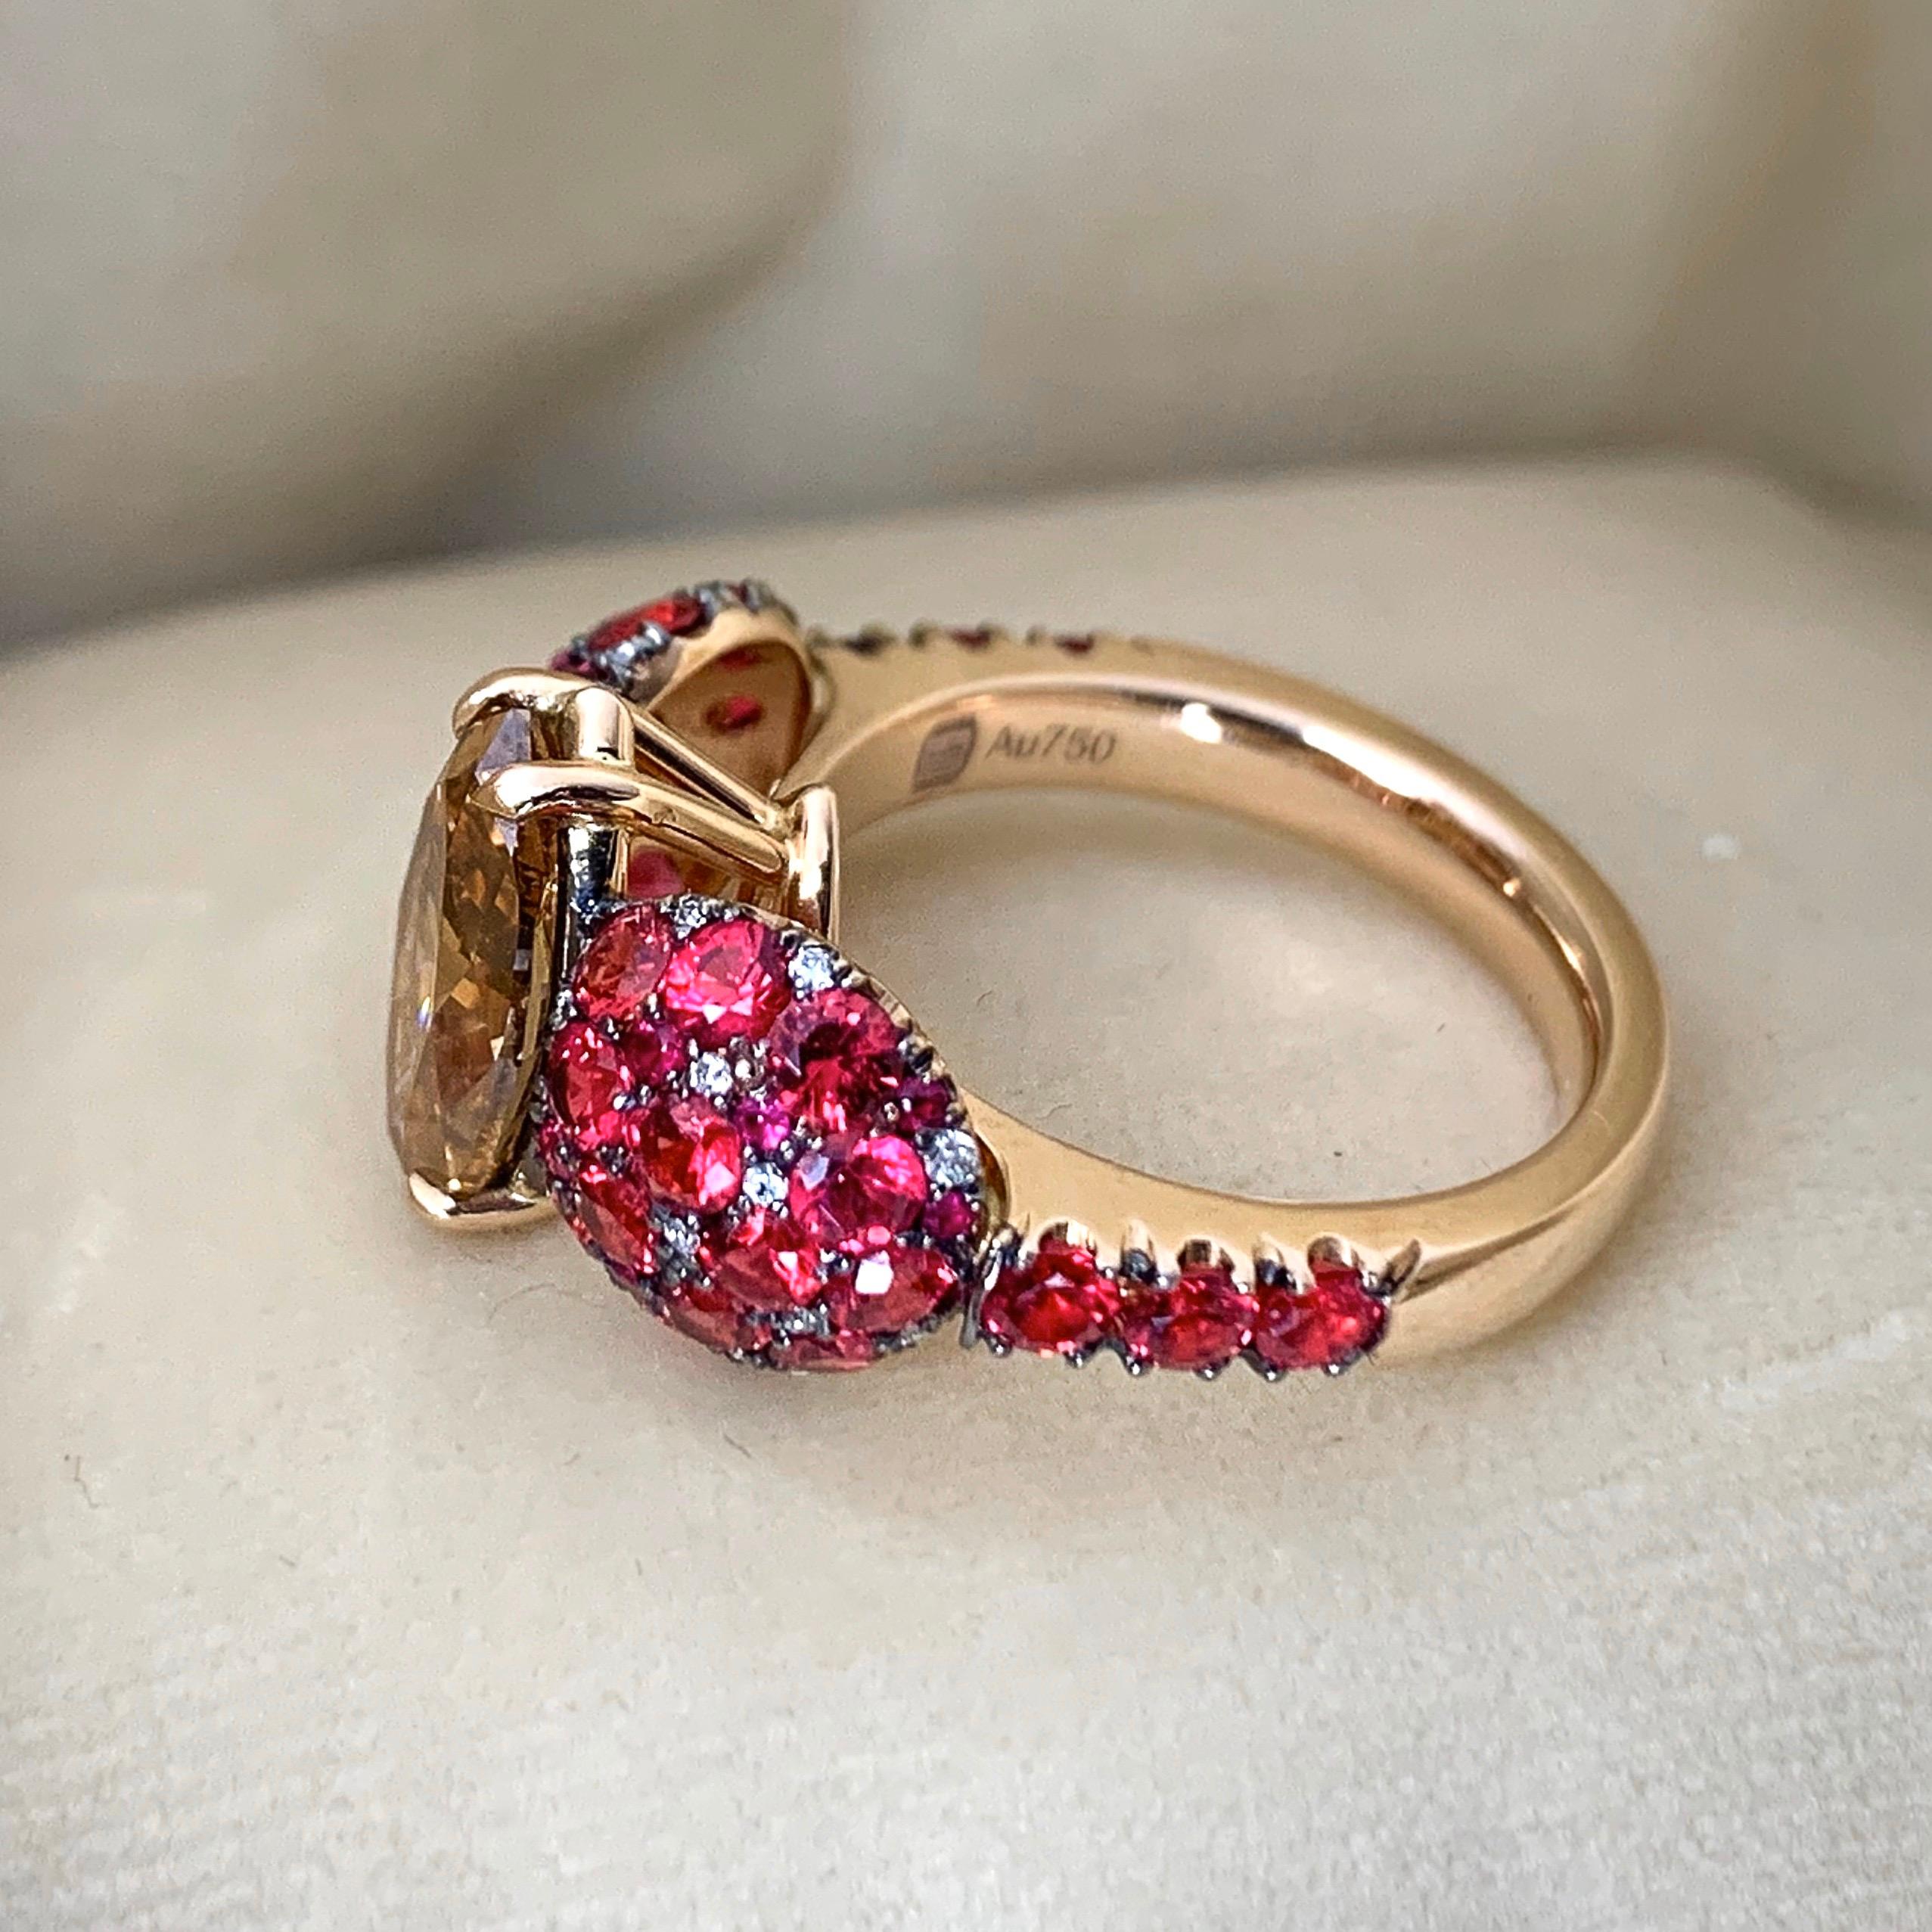 Einzigartiger Ring, handgefertigt in Belgien von der Schmuckdesignerin Joke Quick,  mit unvergleichlicher Präzision und Sorgfalt hergestellt. 

Im Mittelpunkt dieses außergewöhnlichen Schmuckstücks steht ein prächtiger, orange-brauner Diamant in